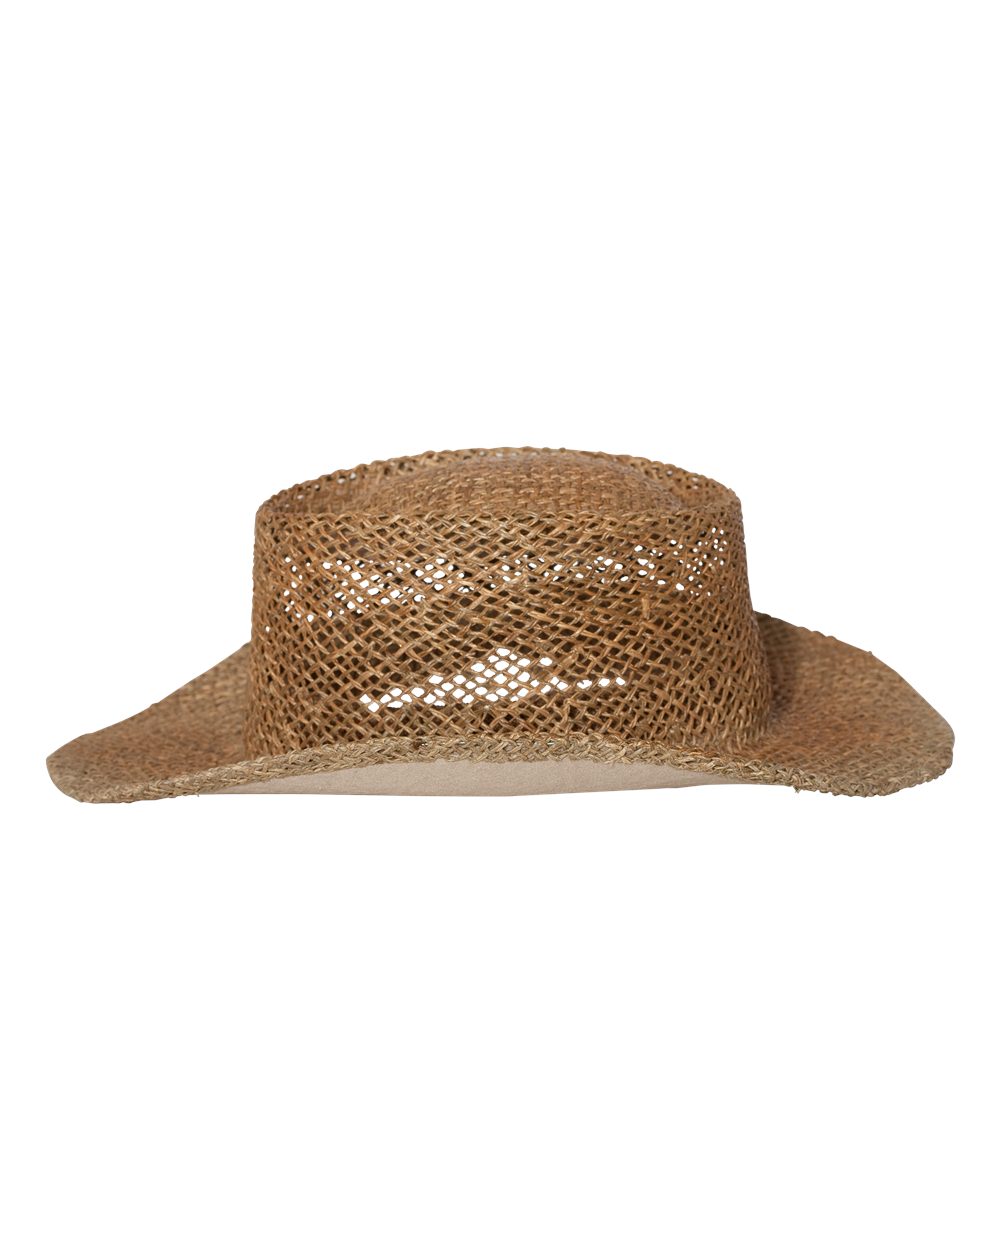 Outdoor Cap Lined Gambler Straw Hat - STW100